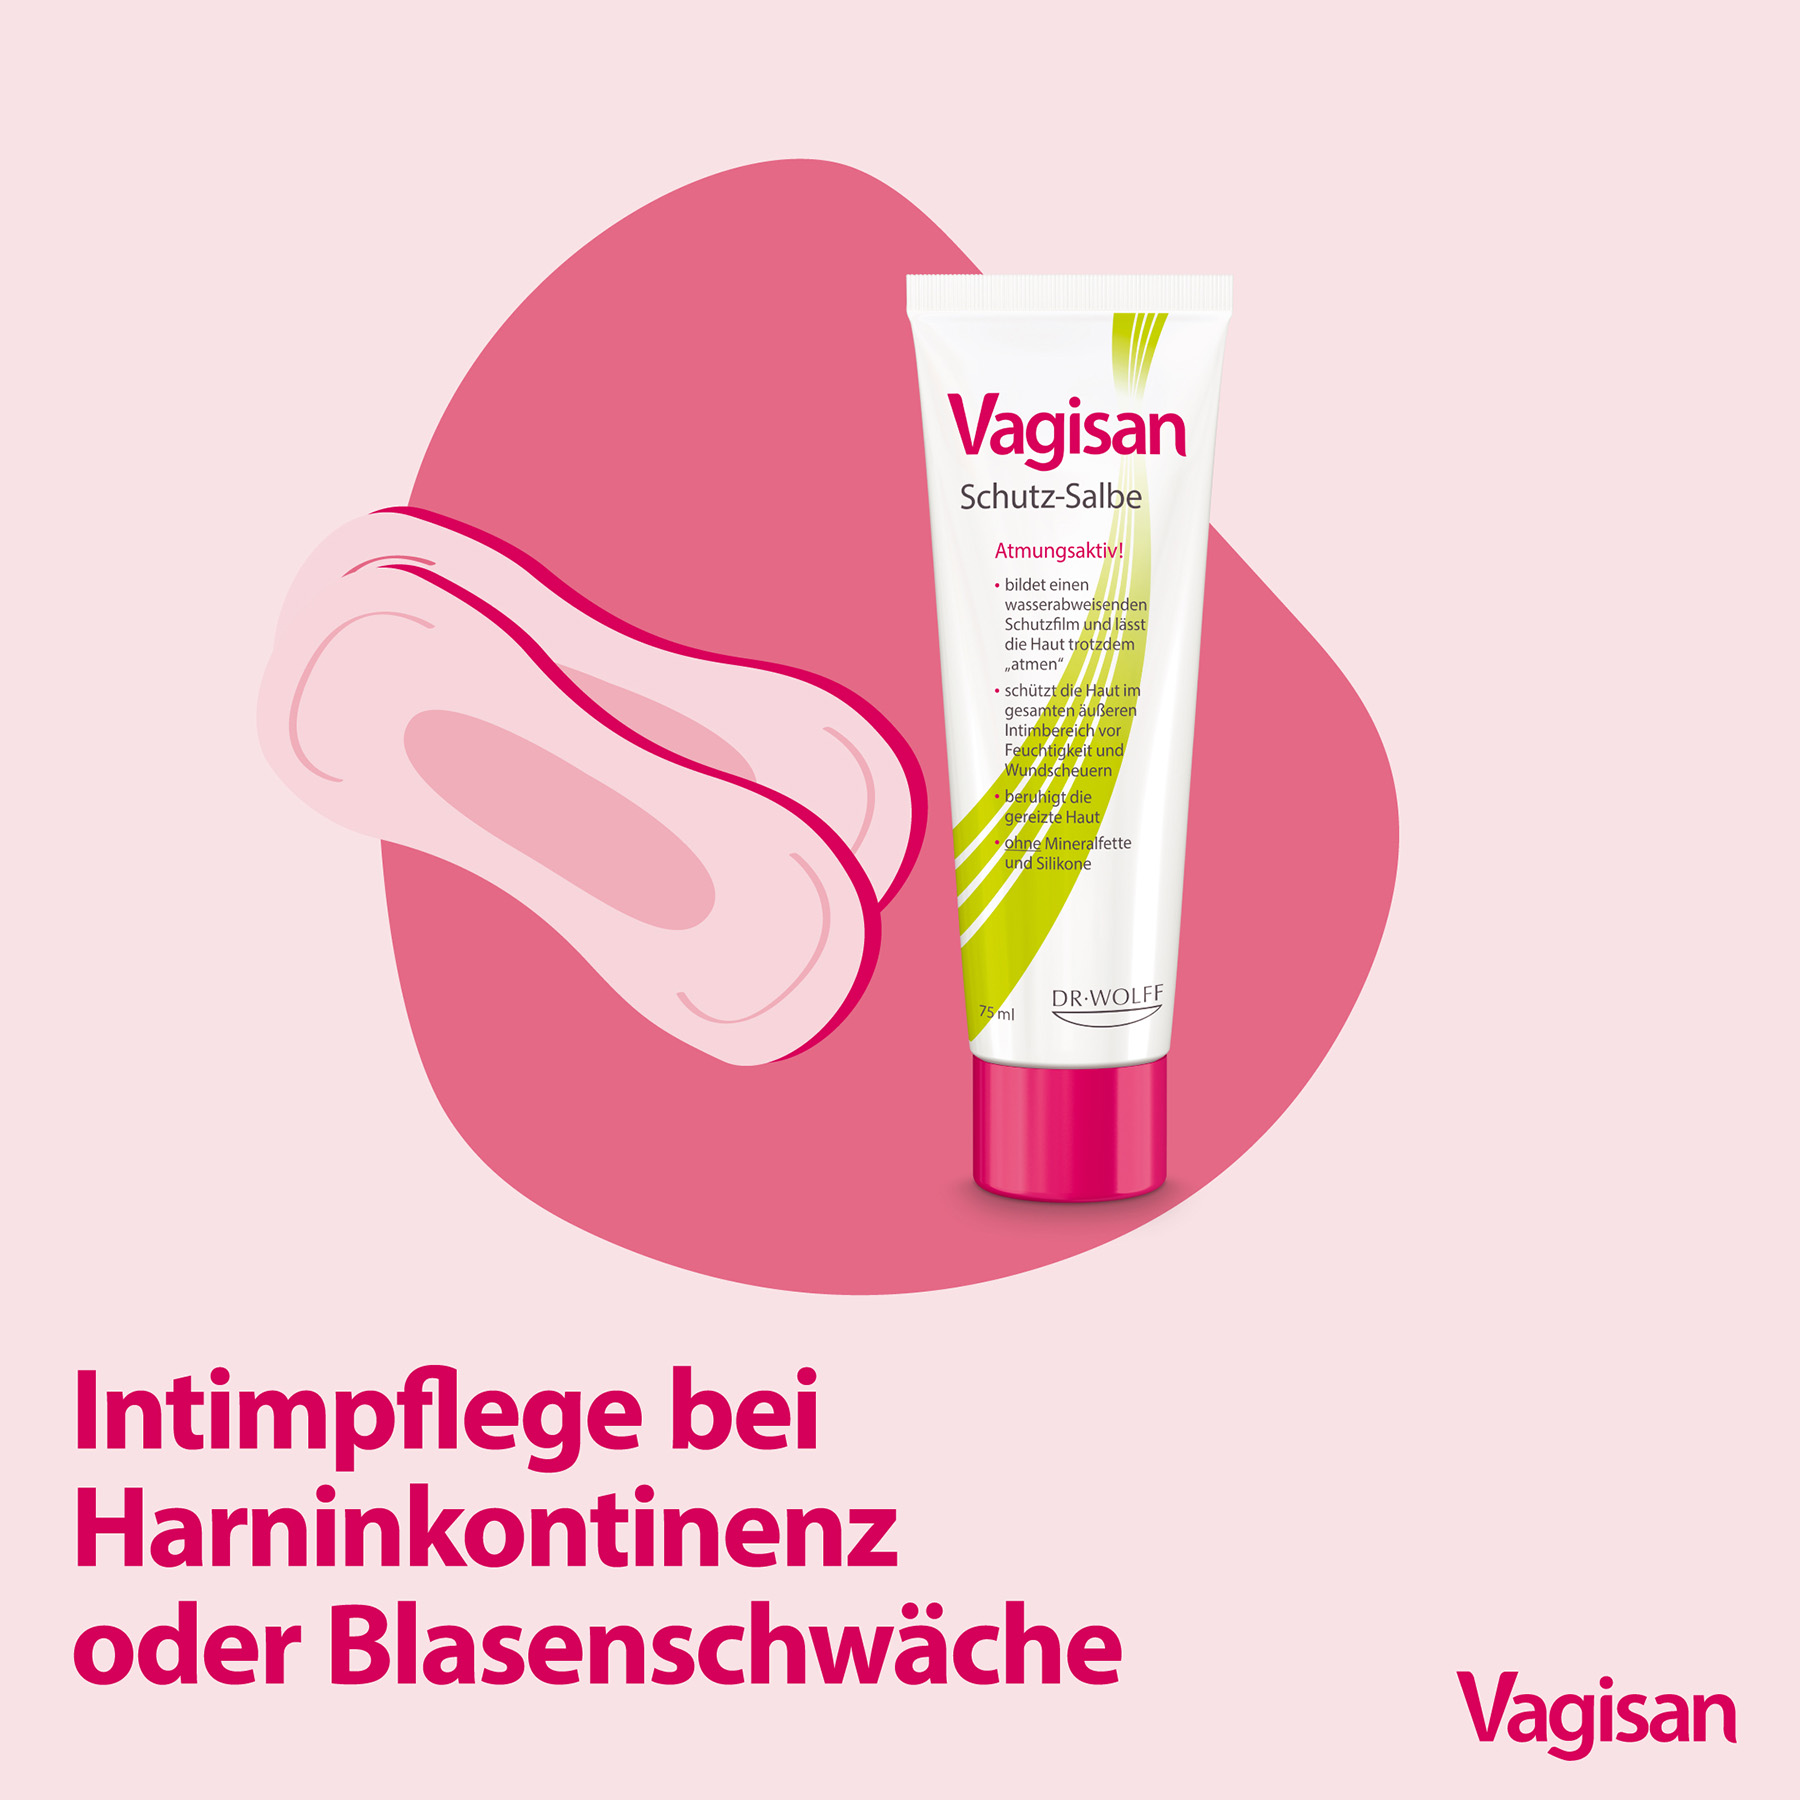 Stilisierte Illustration einer Tube der Vagisan Schutz-Salbe und Slipeinlagen bei Blasenschwäche als Sinnbild für die Intimpflege bei Inkontinenz